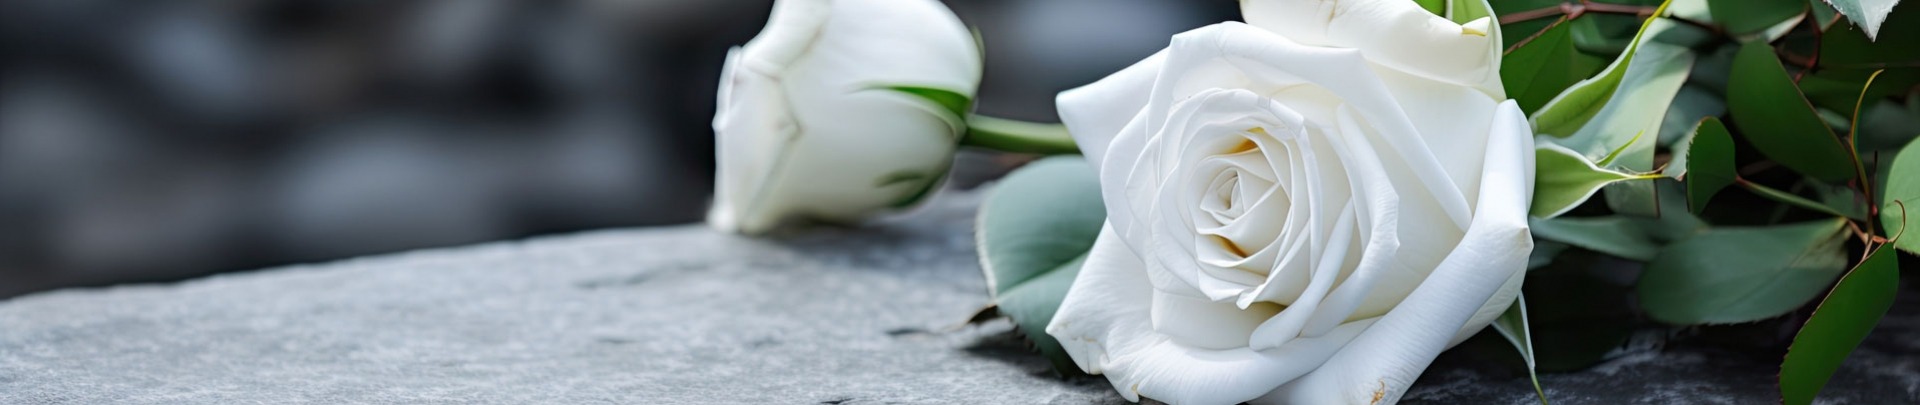 Een begrafenisceremonie buiten met een witte roos op een grijze granieten grafsteen